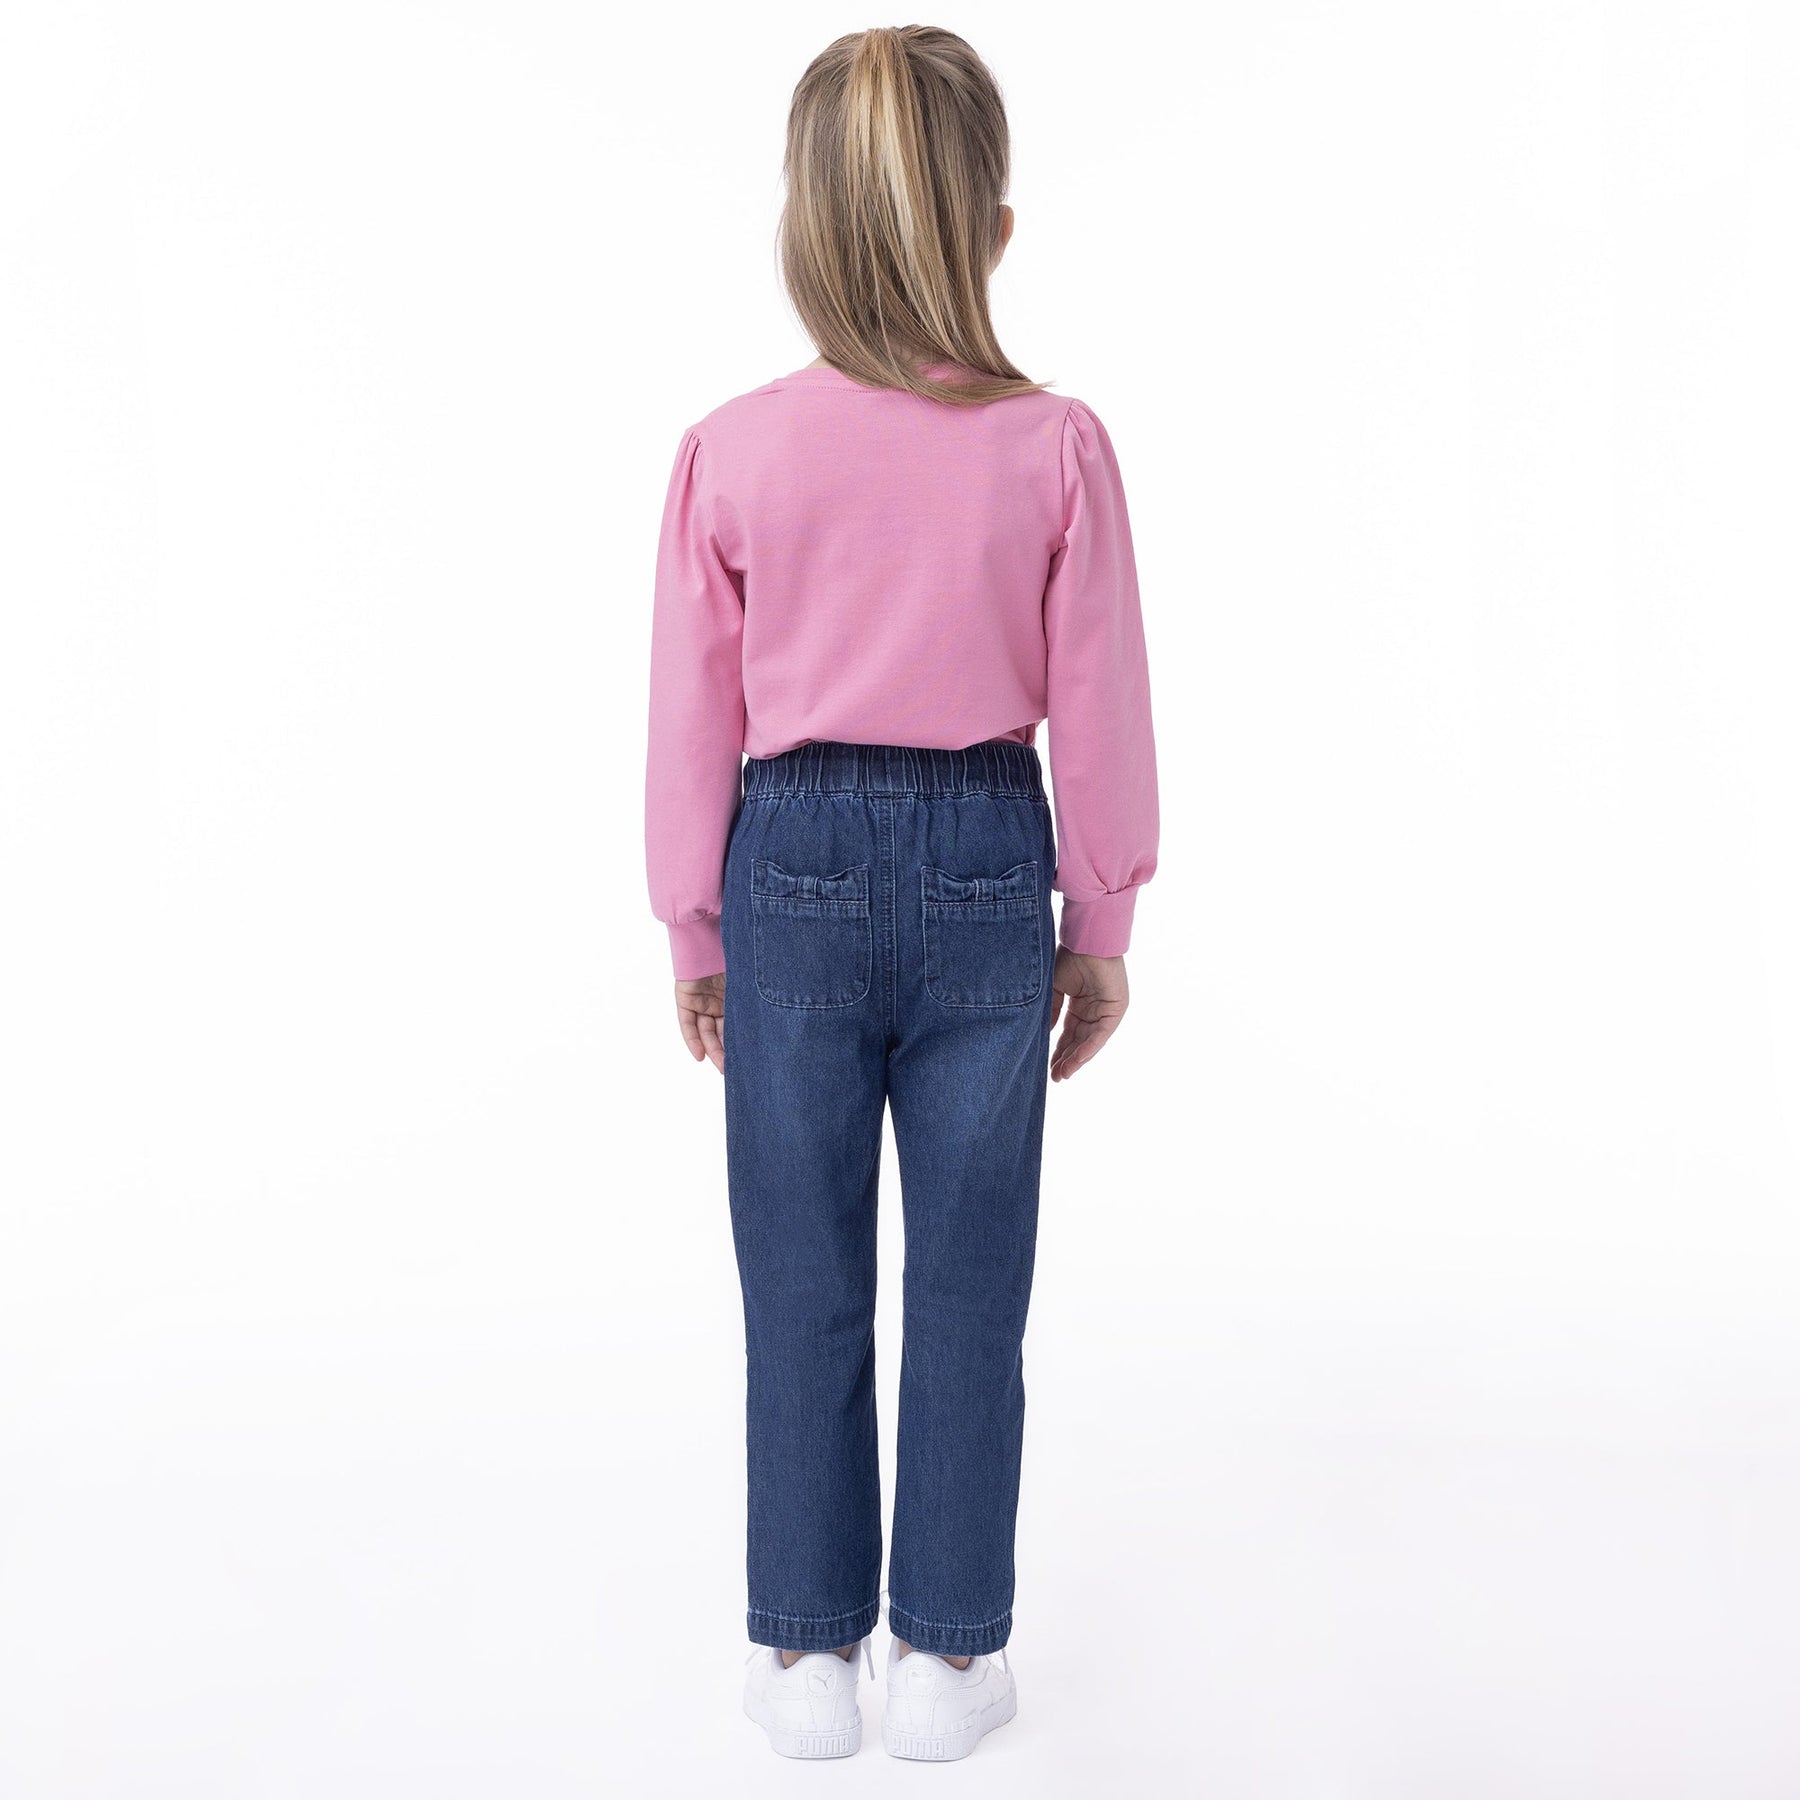 Pantalon pour enfant fille par Nanö | F2302-09 Denim Medium | Boutique Flos, vêtements mode pour bébés et enfants